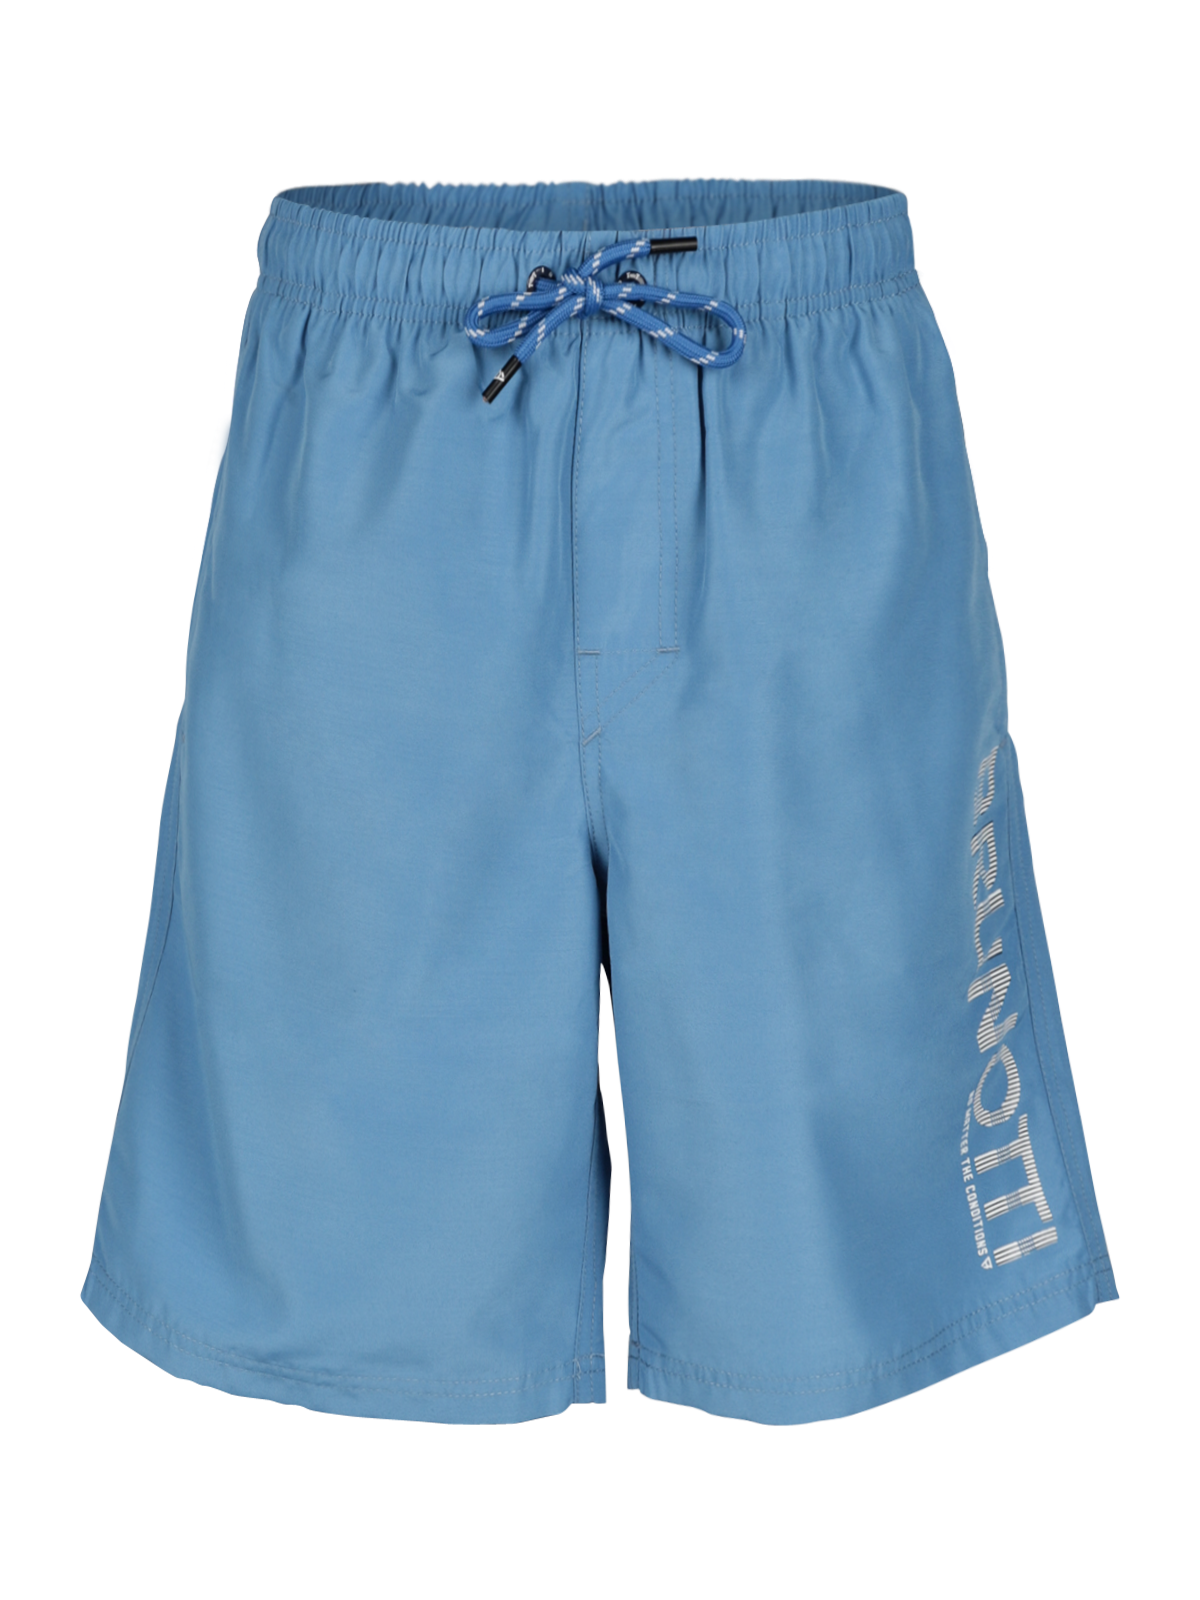 Hestey Boys Swim Shorts | Blue